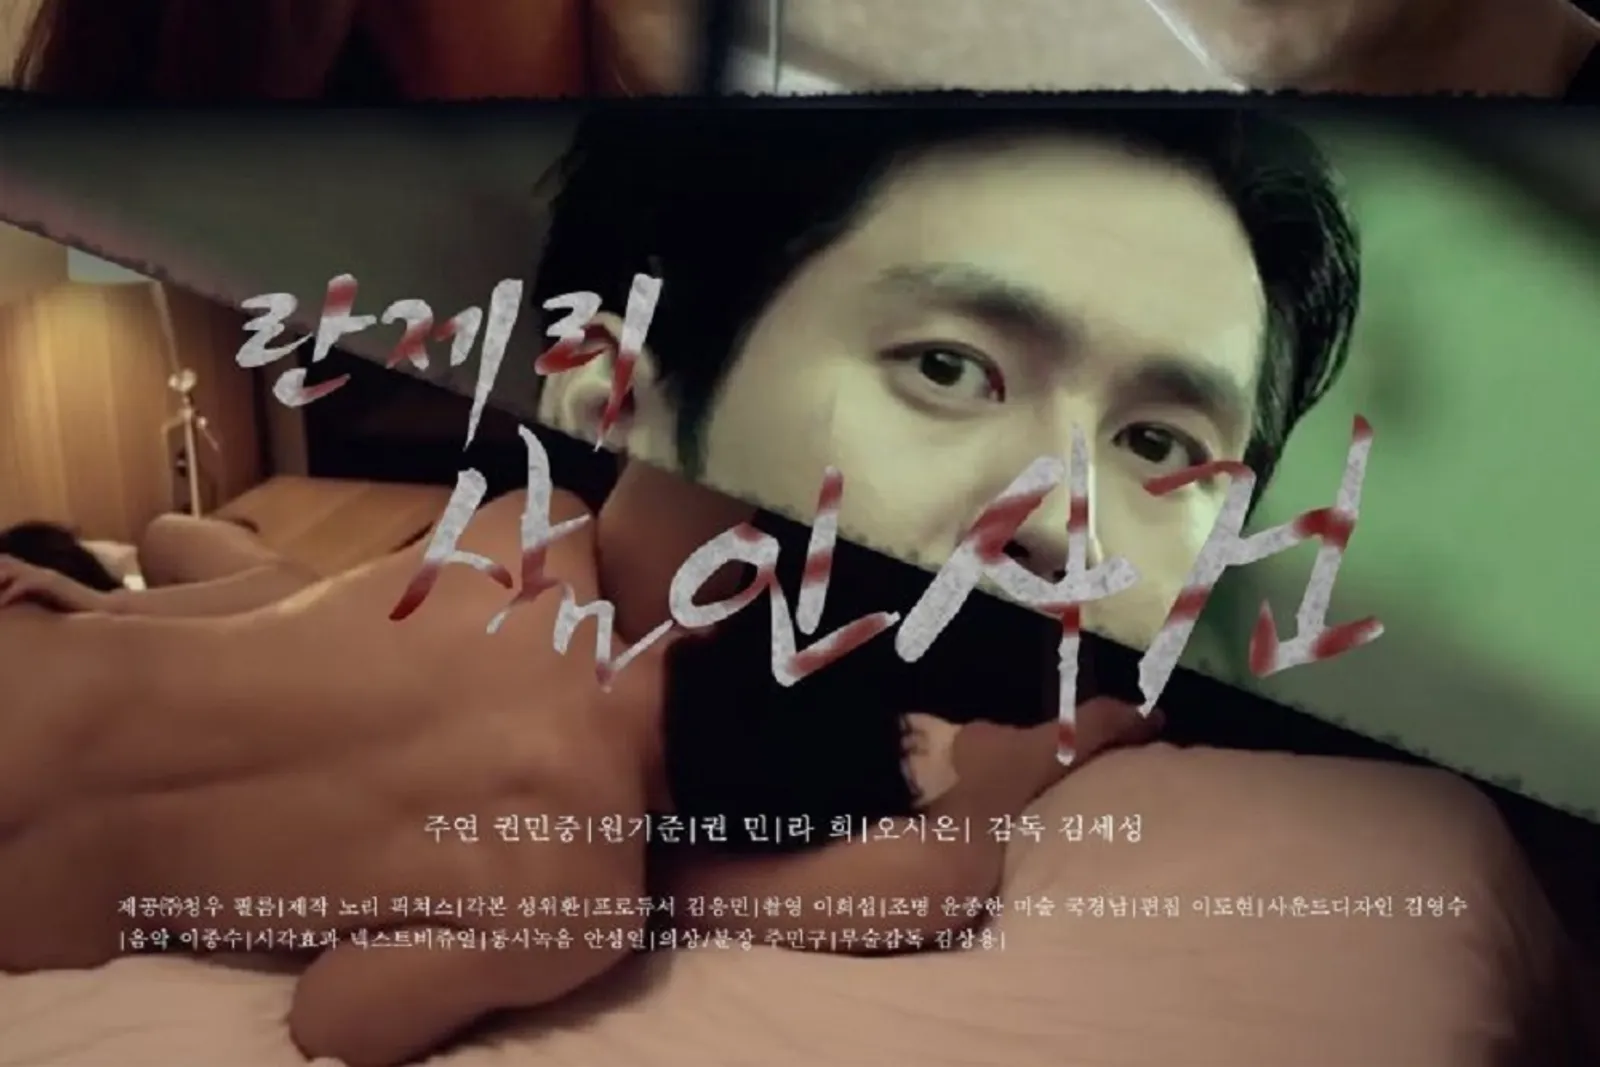 7 Film Thriller Korea yang Banyak Adegan Seksnya, Makin Panas!